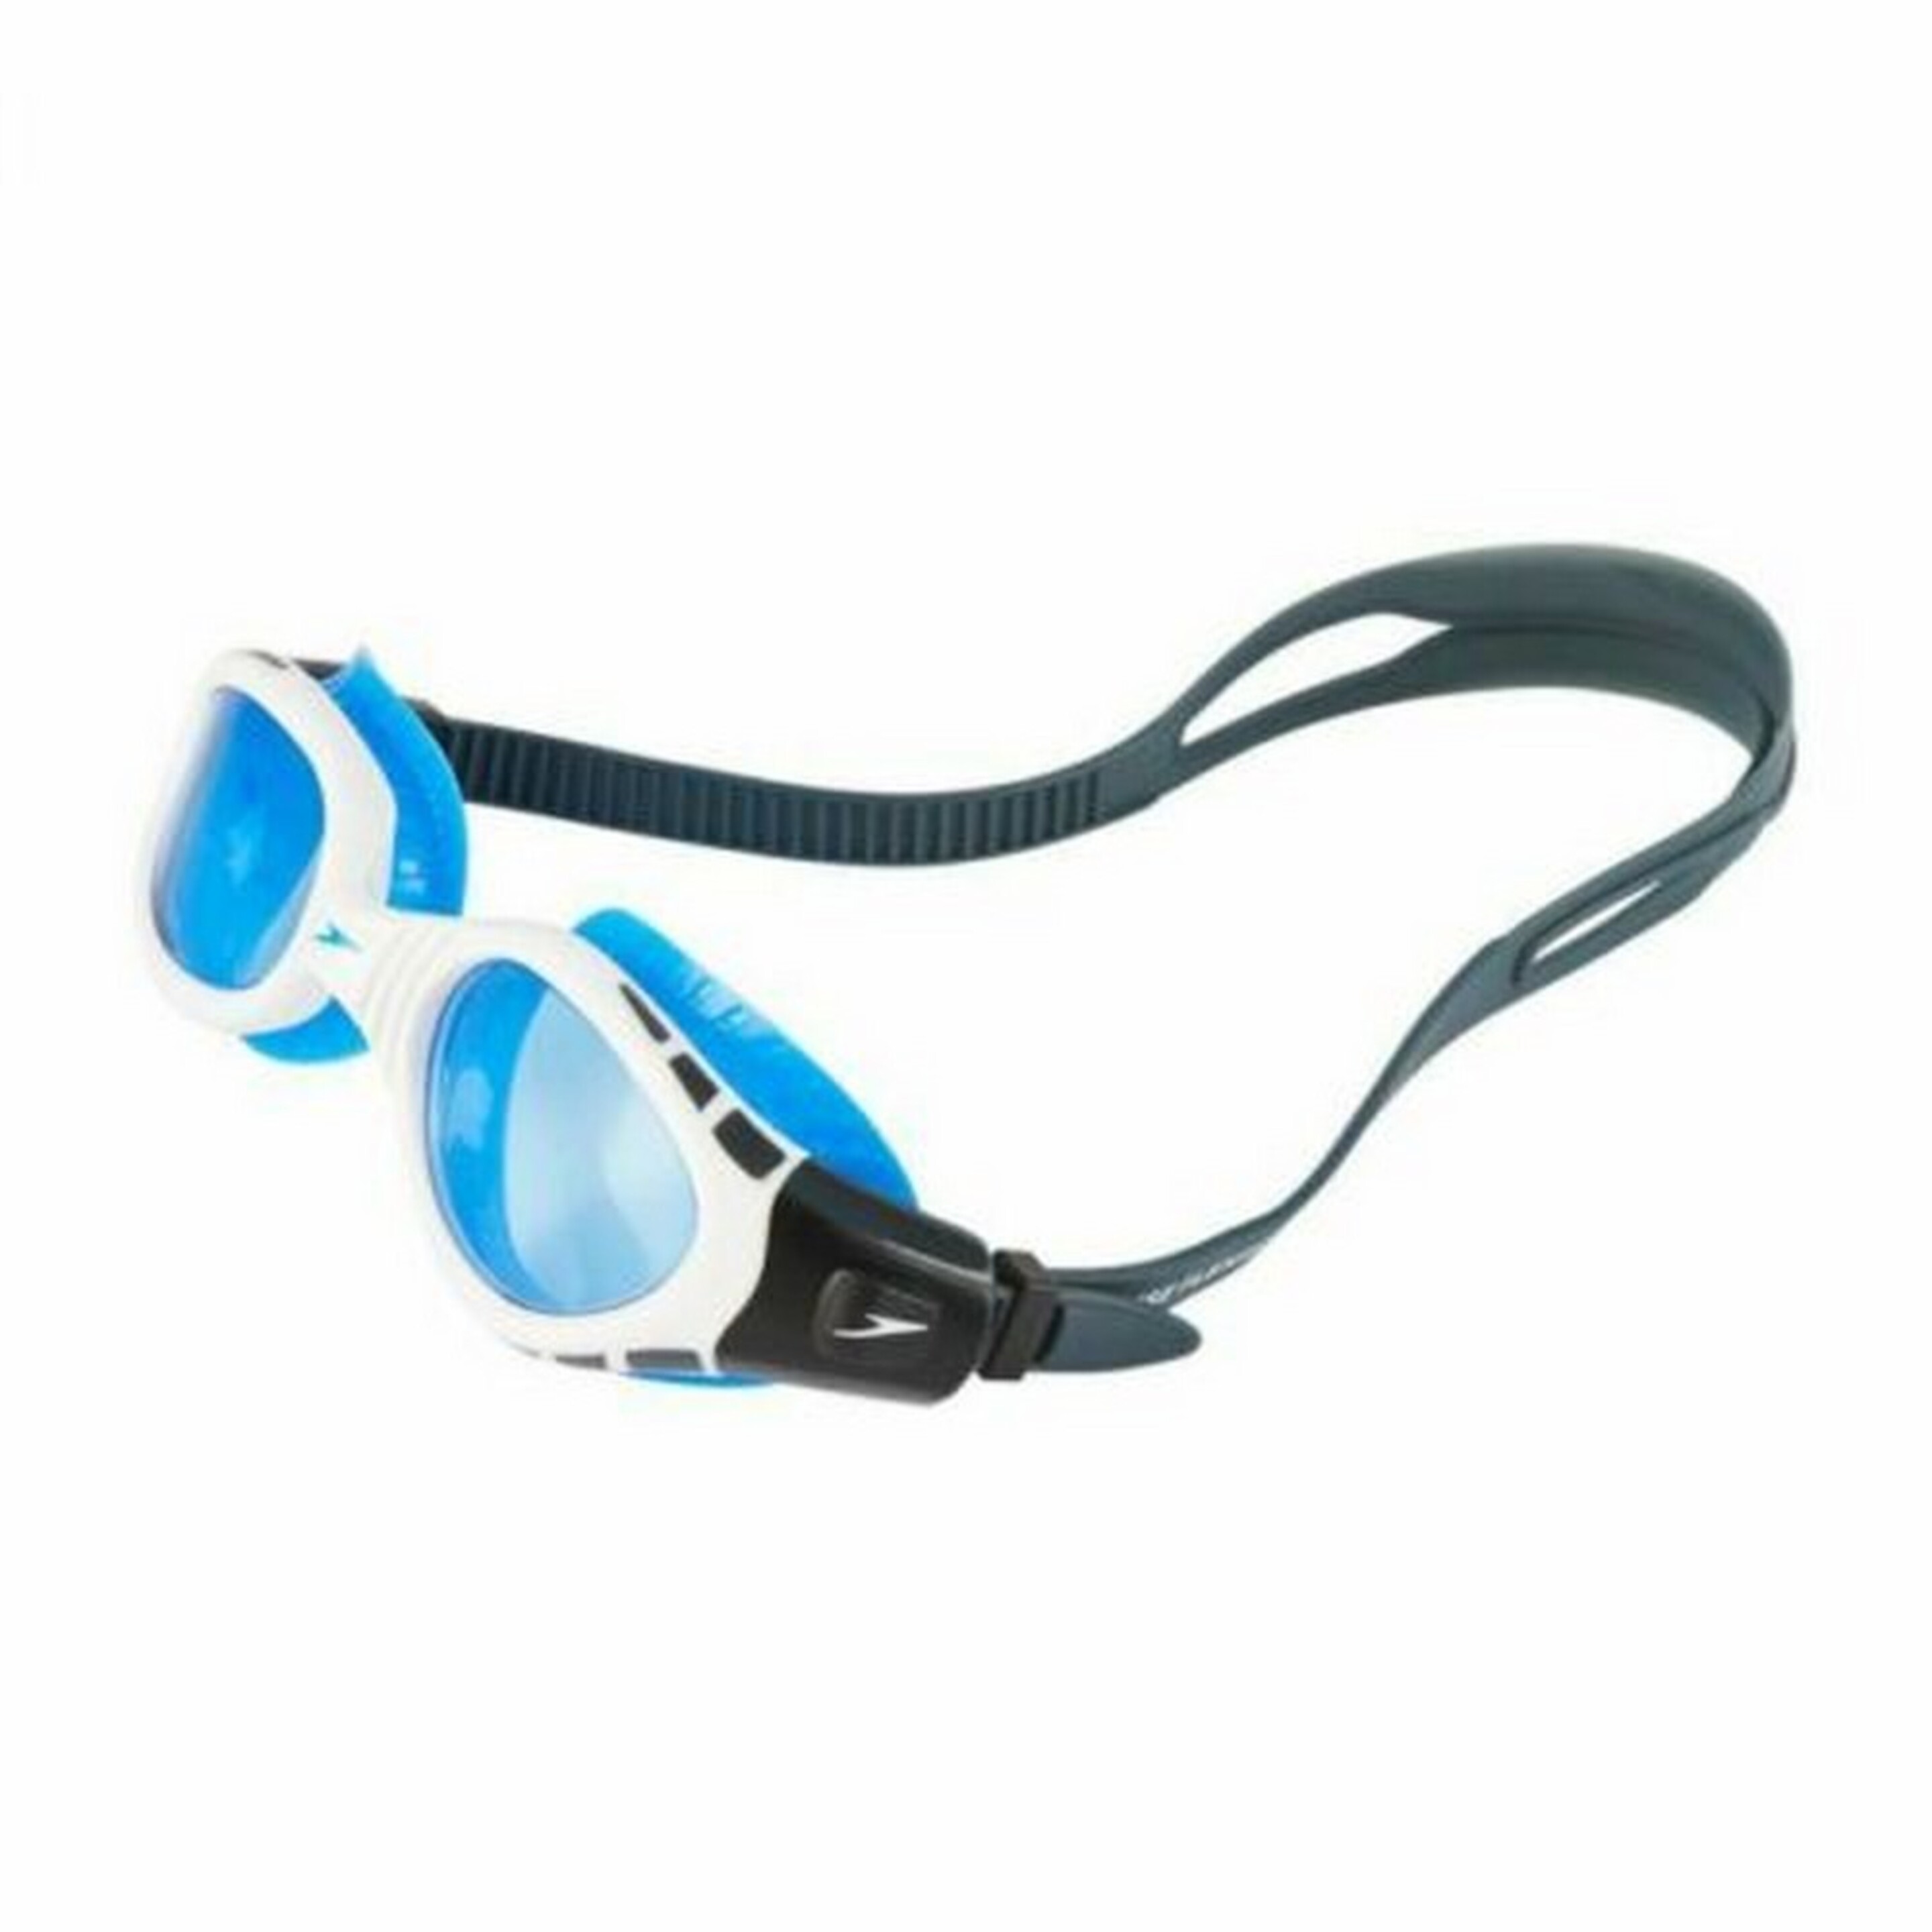 Gafas De Natación Futura Biofuse Flexiseal Speedo - Azul MKP